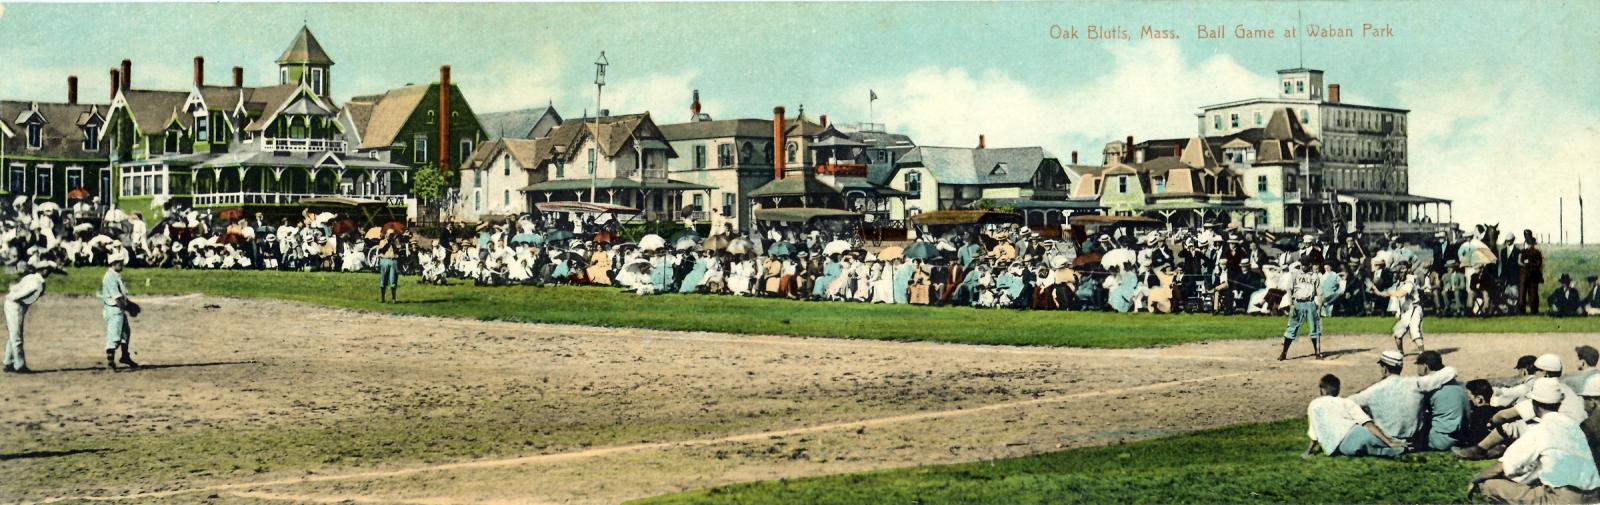 baseball game at Waban Park 1910